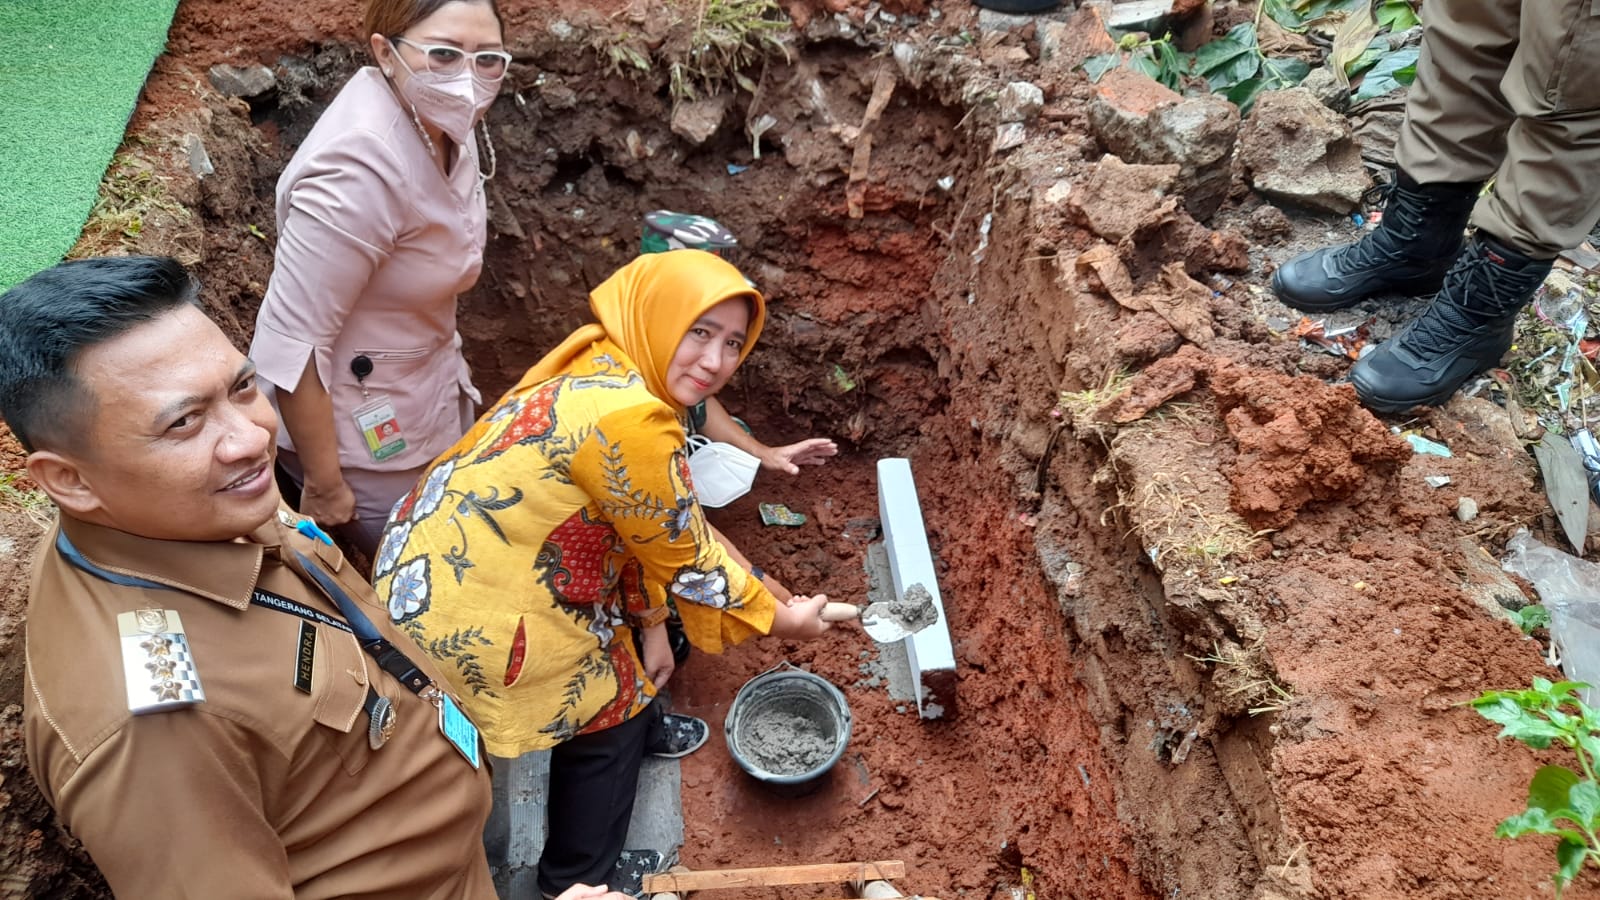 Lewat Program CSR, RSPI Bintaro Bantu Warga Pondok Aren Bangun Jamban